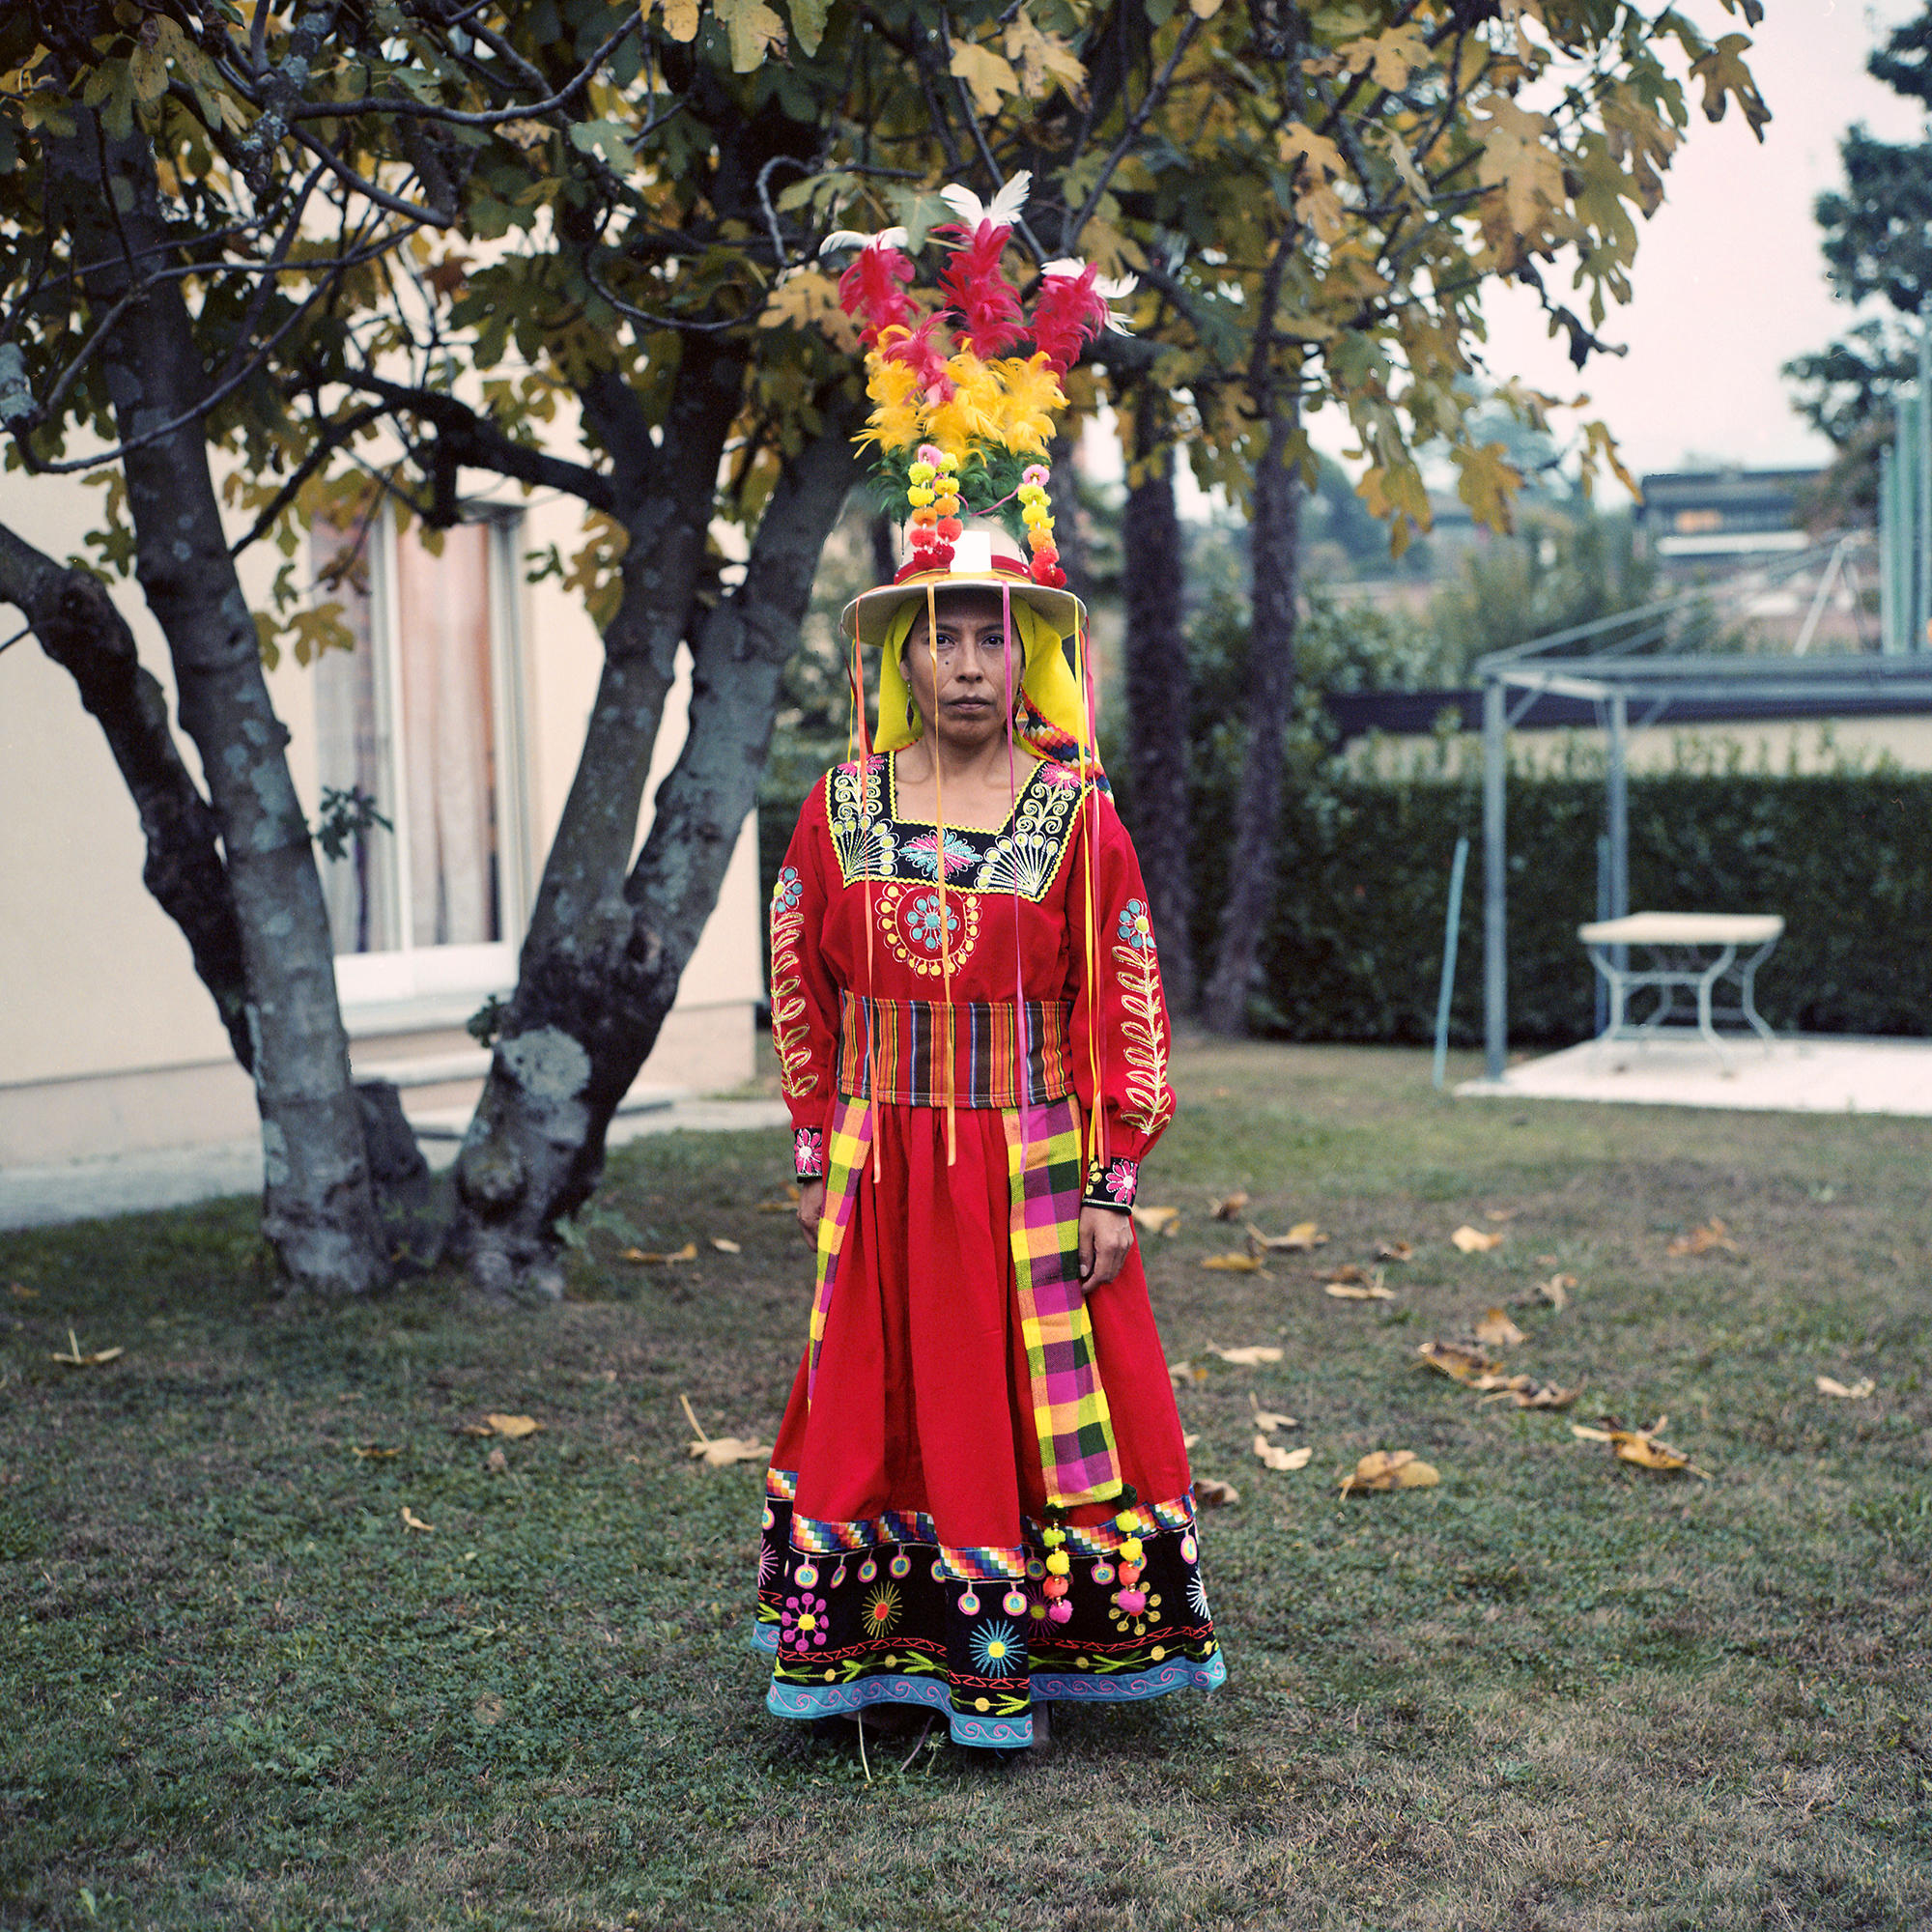 Mujer con vestimenta típica de Bolivia (muy colorida y un sombrero coronado con un penacho)